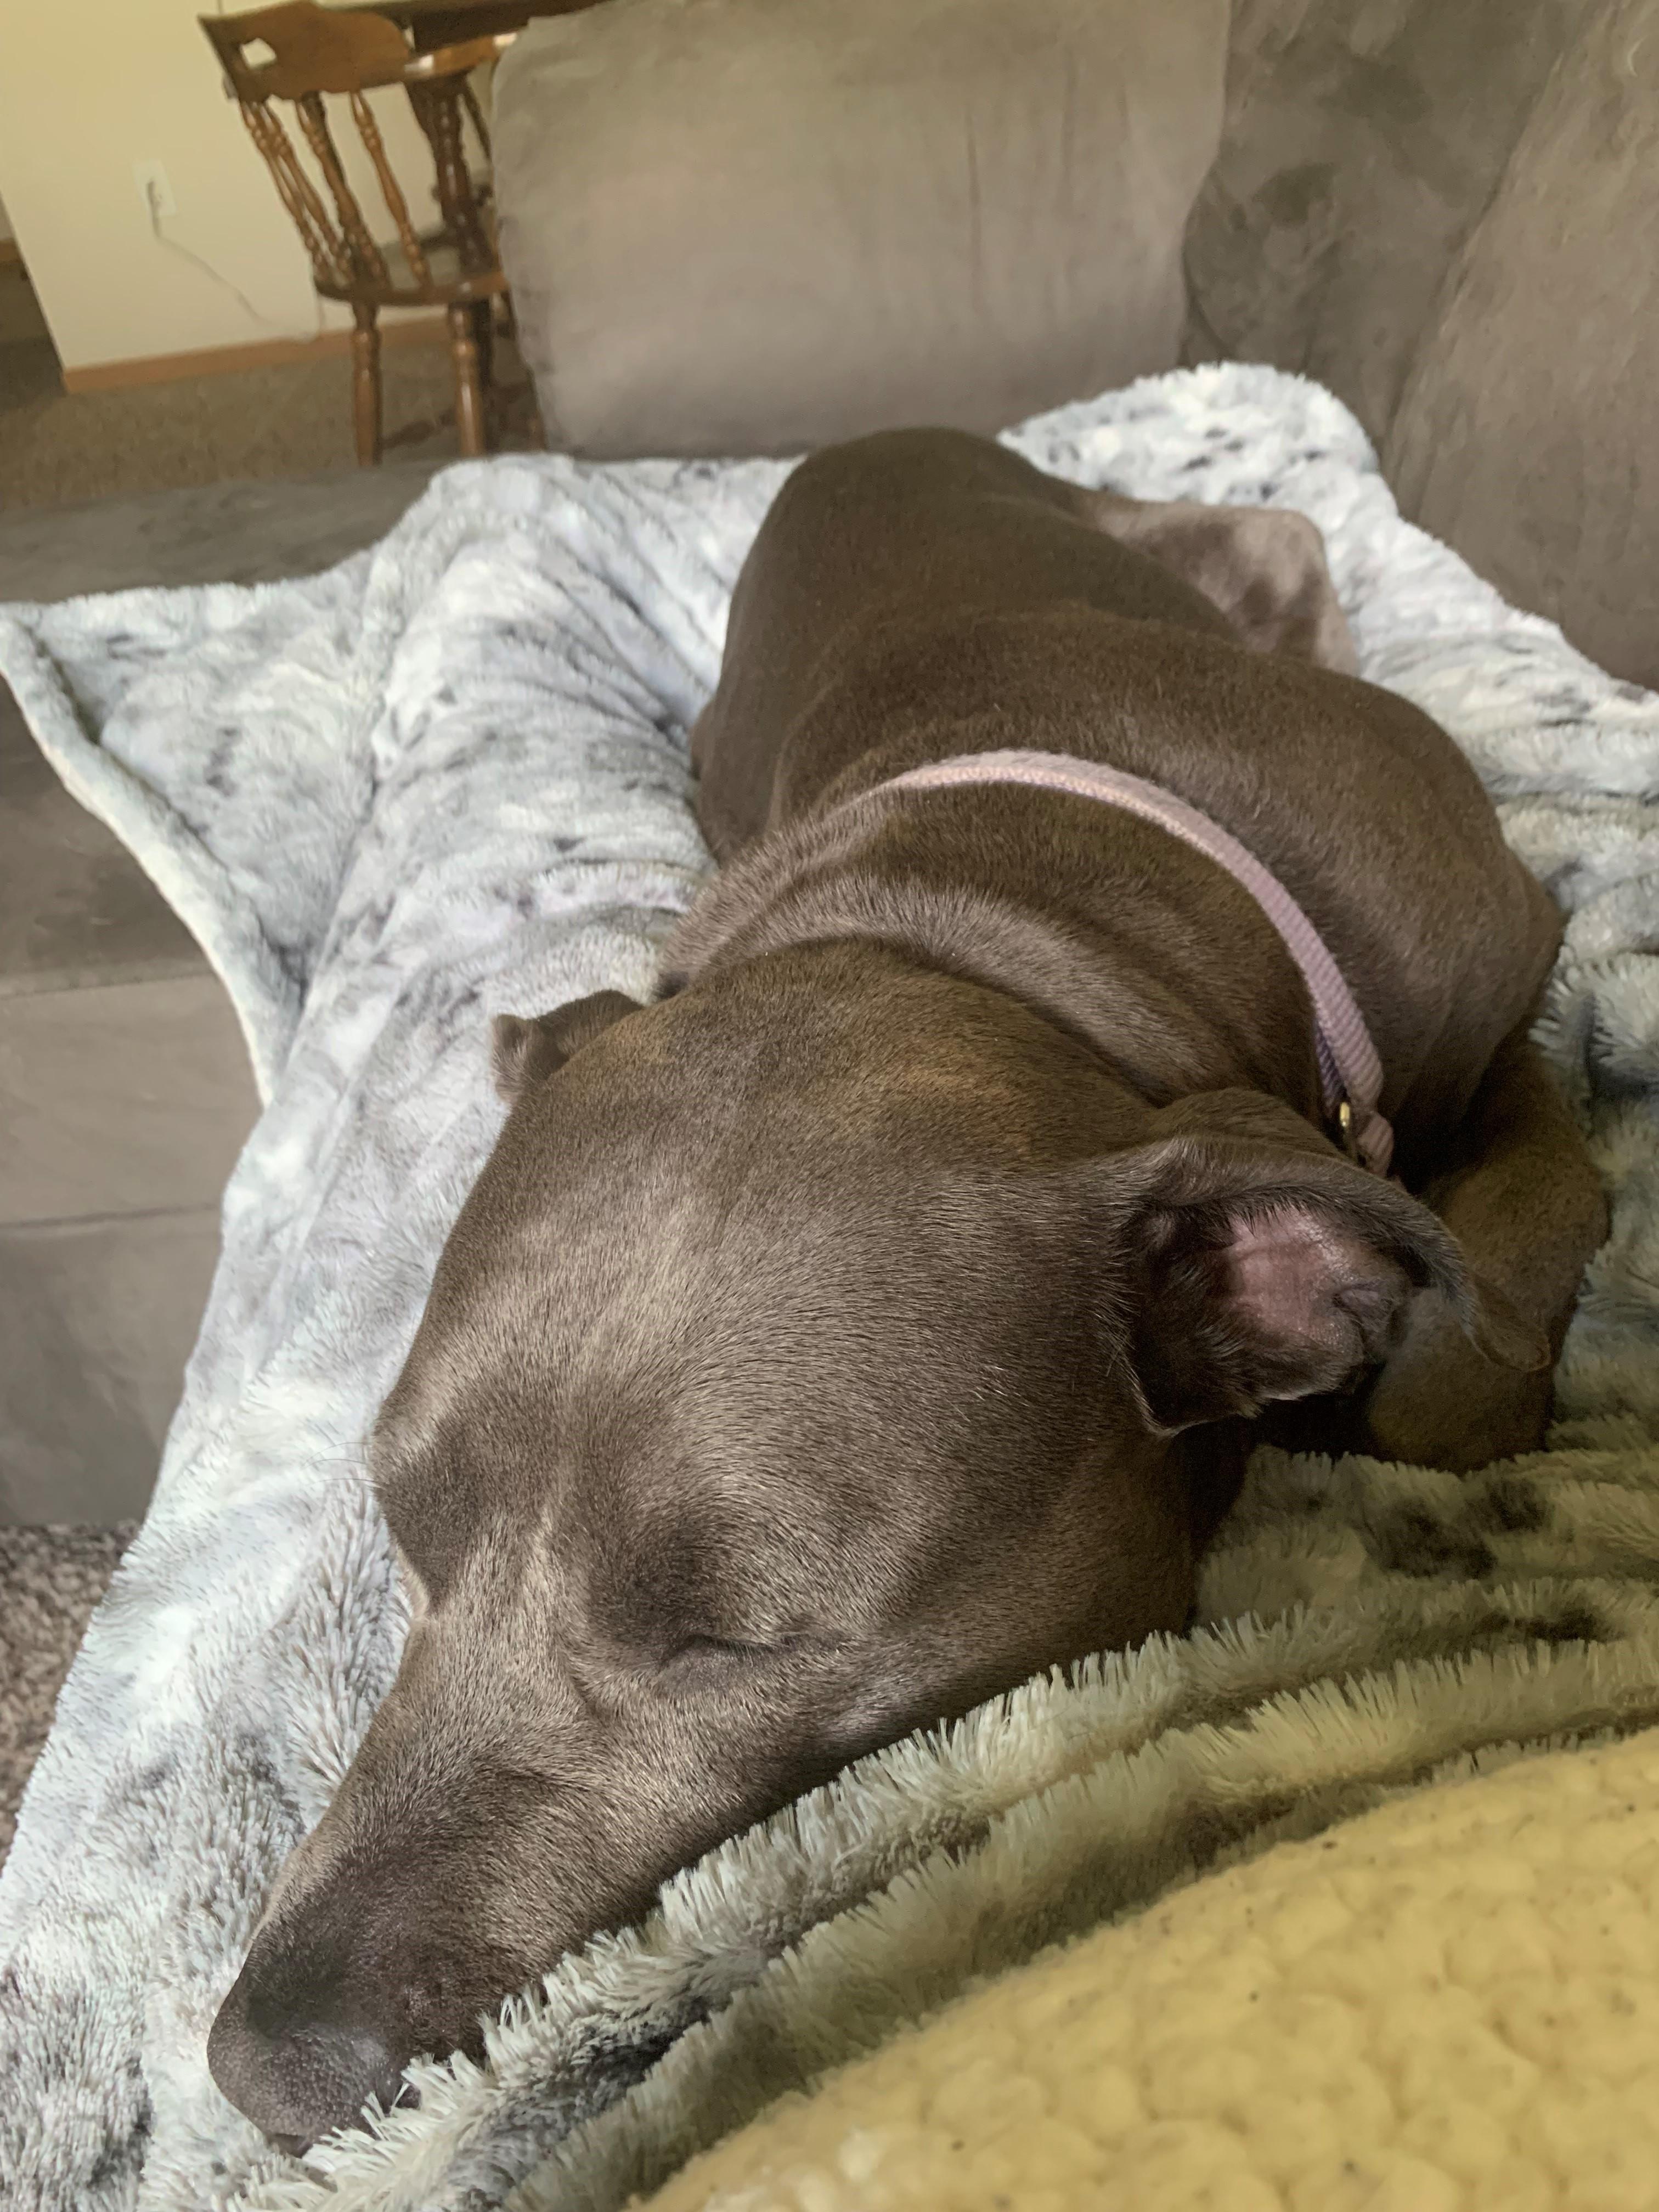 A big brown dog sleeps on a fluffy blanket